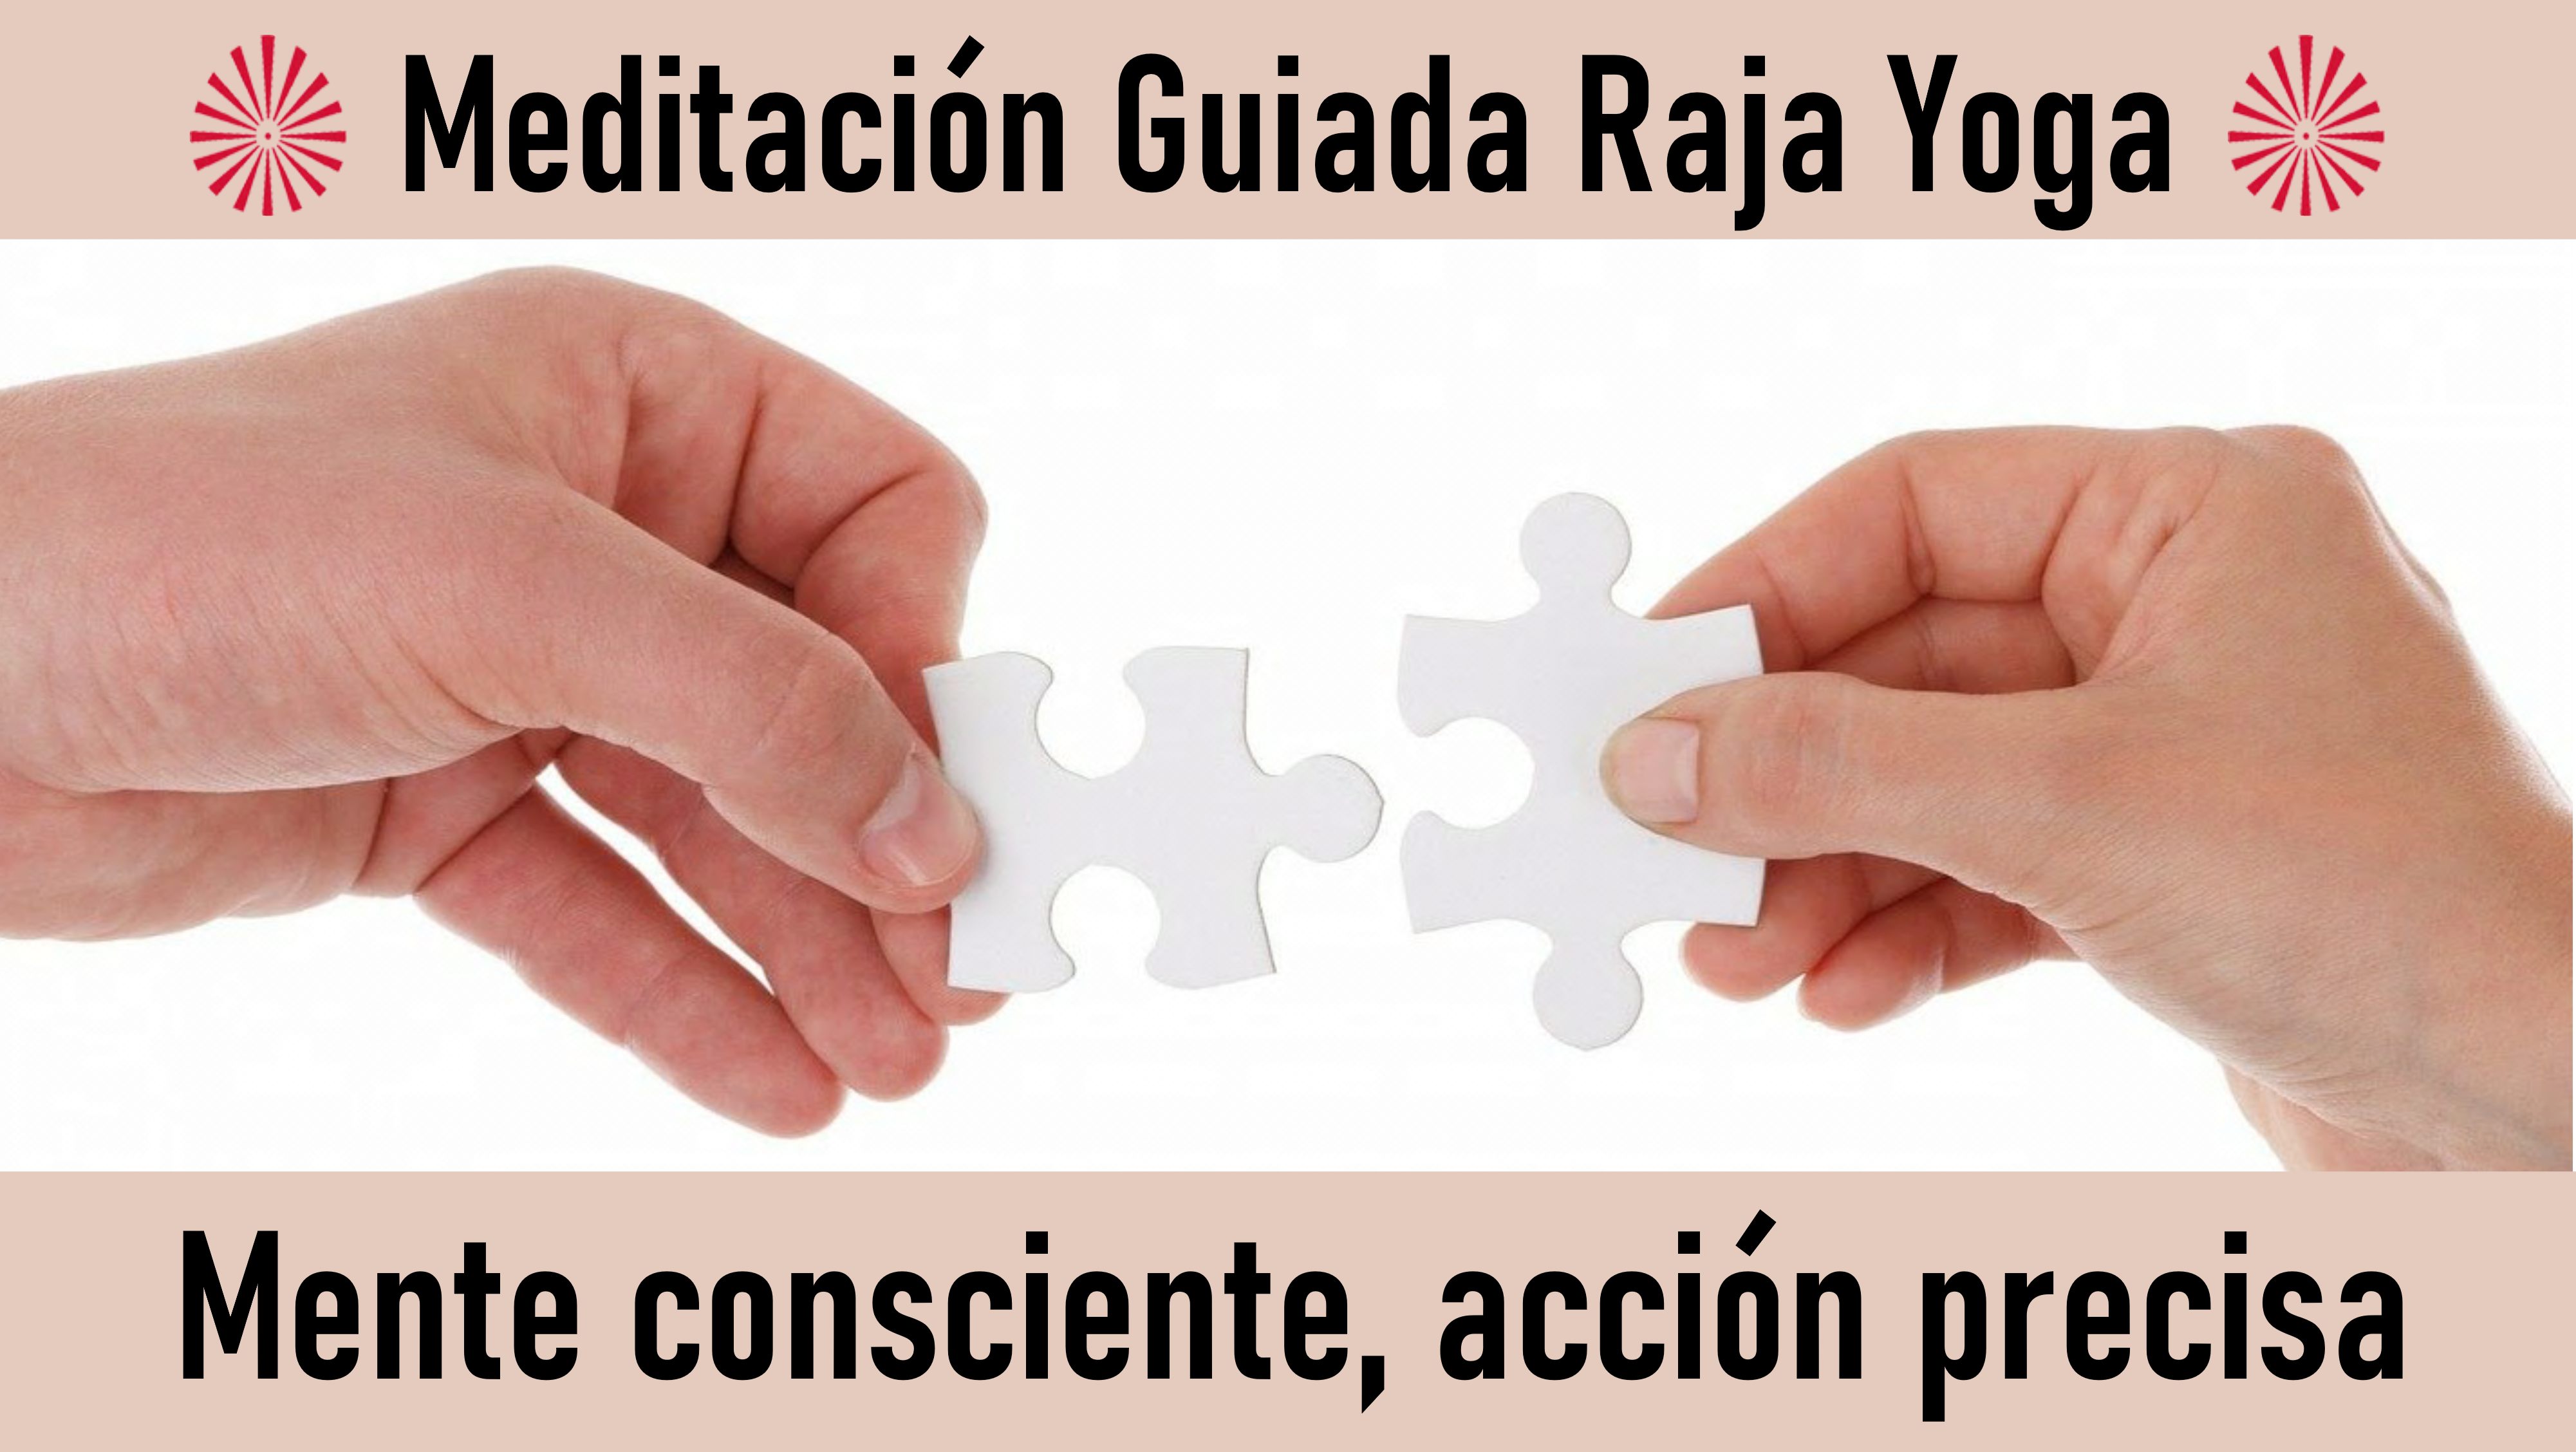 Meditación Raja Yoga:  Mente consciente, acción precisa (13 Octubre 2020) On-line desde Barcelona